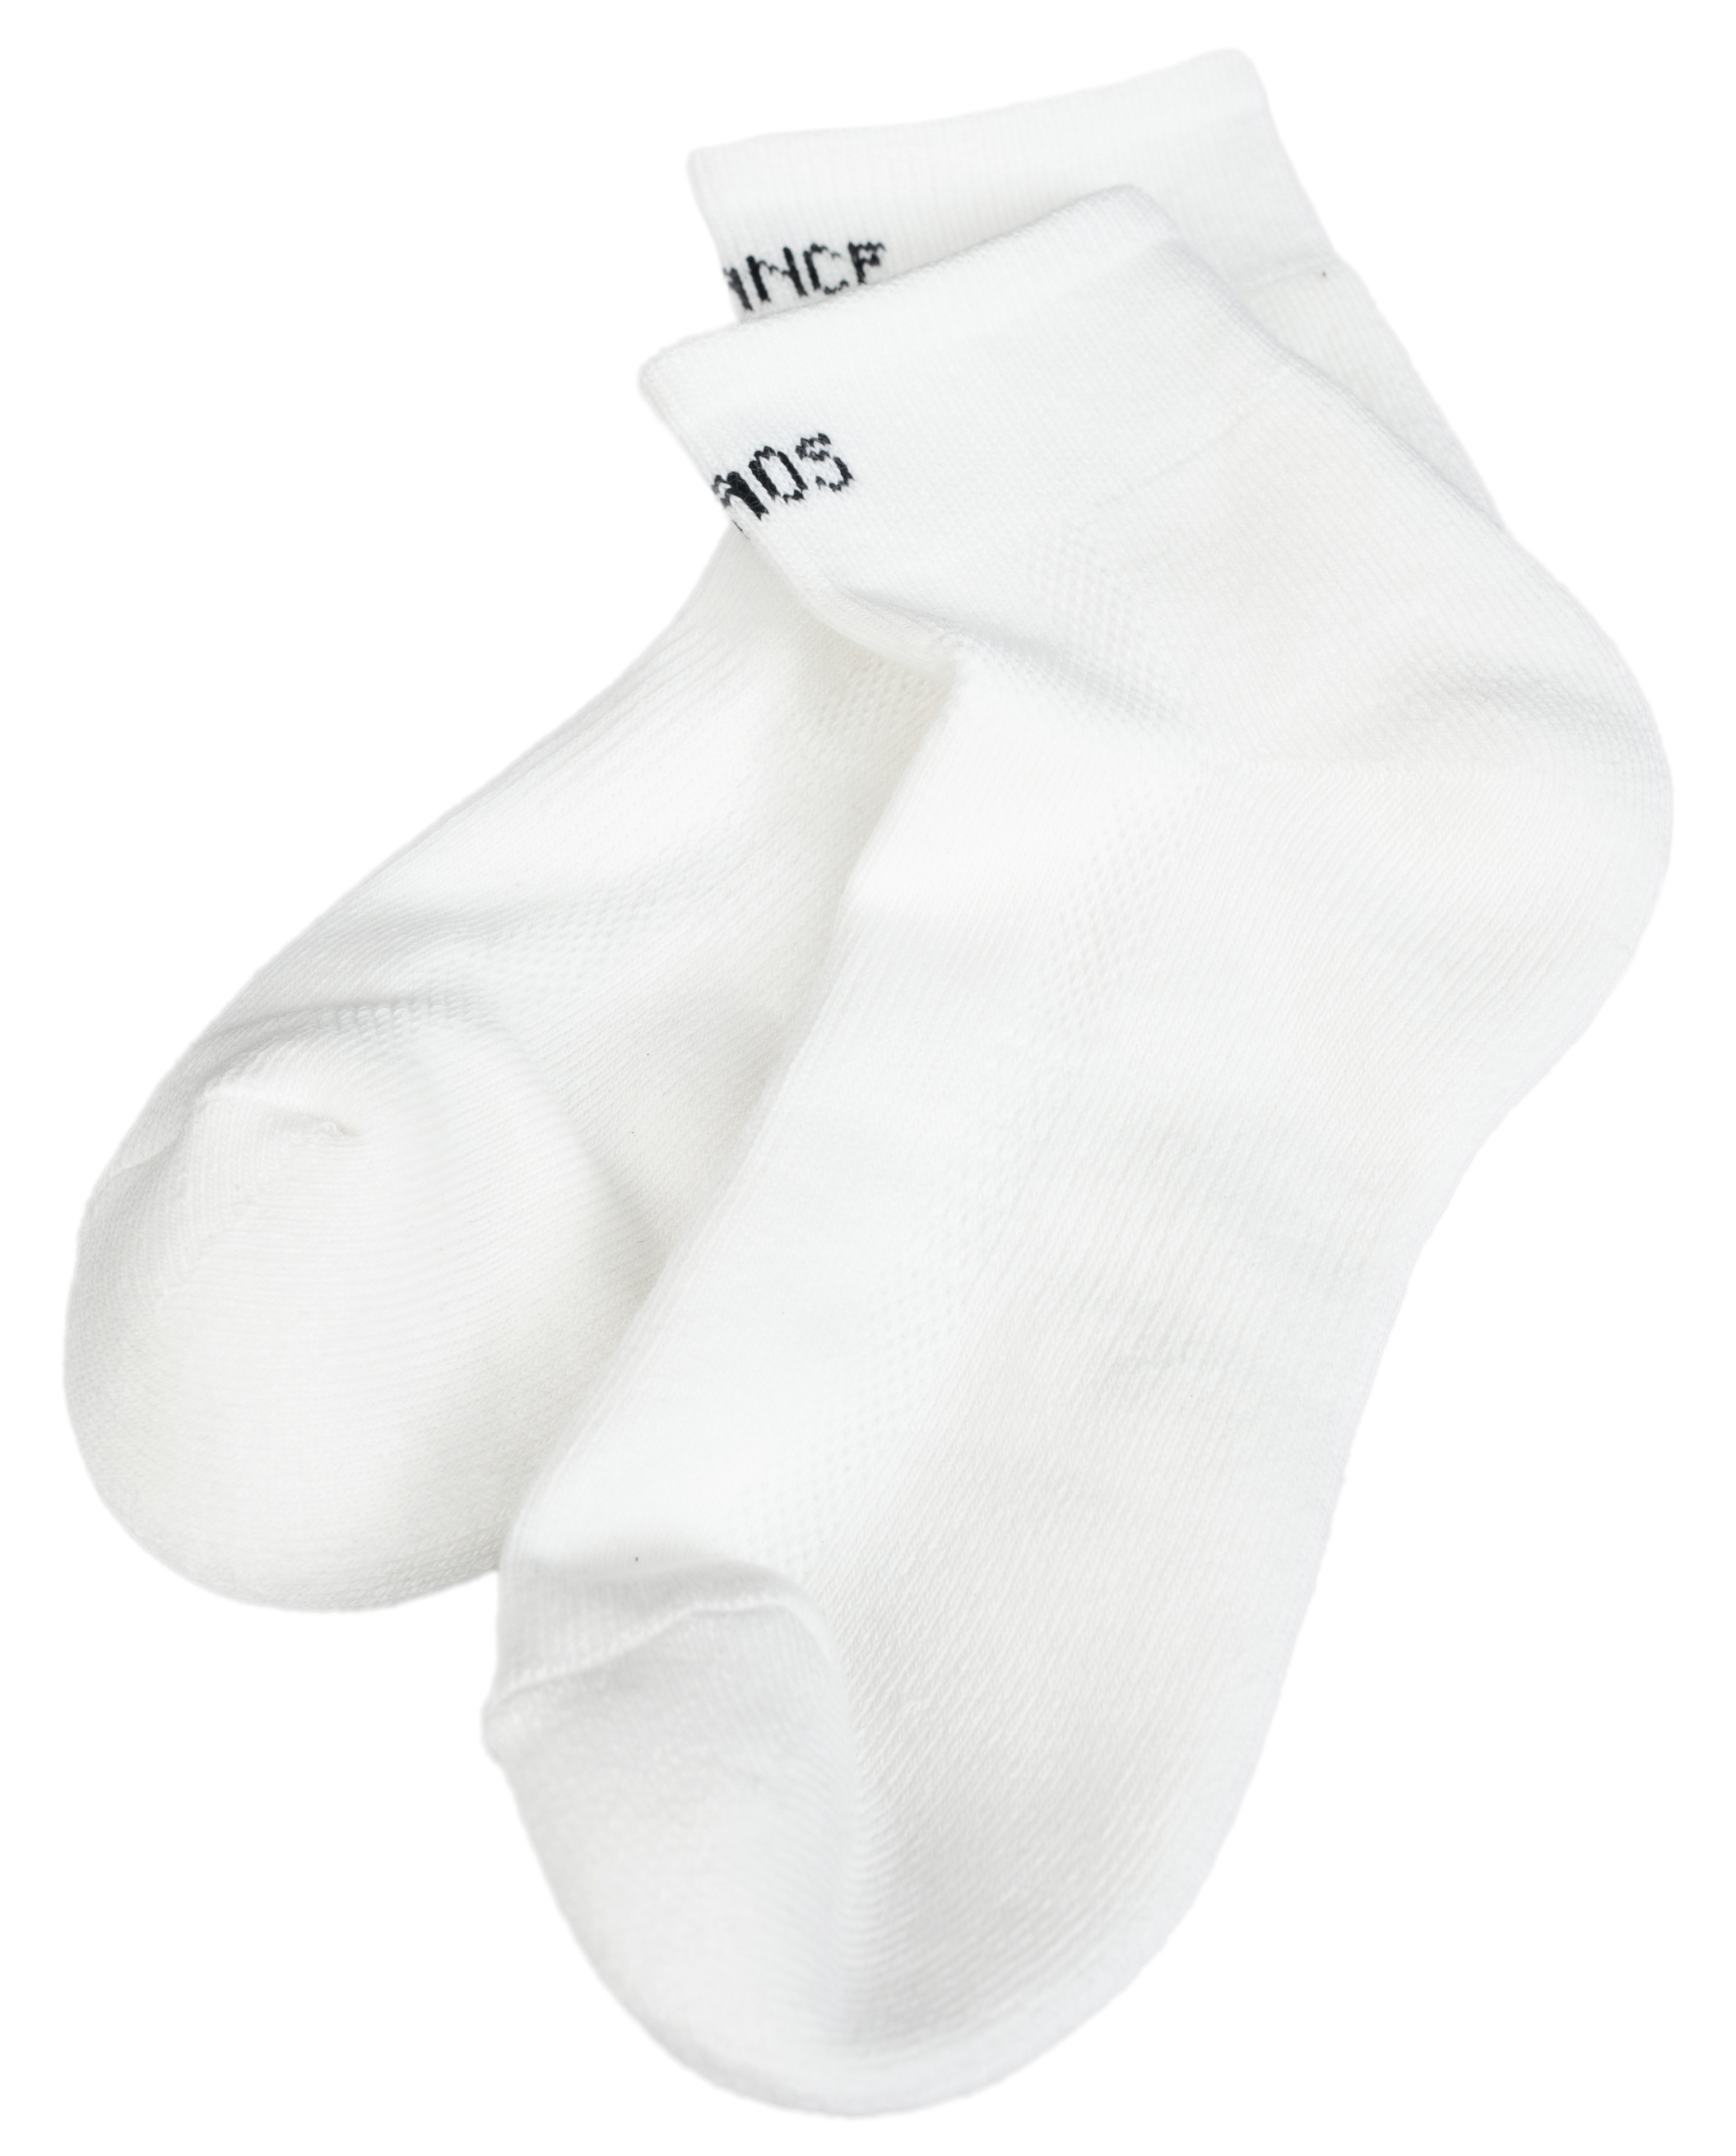 Белые носки Chaos Balance Undercover UC1B4L03/wht, размер One Size UC1B4L03/wht - фото 1